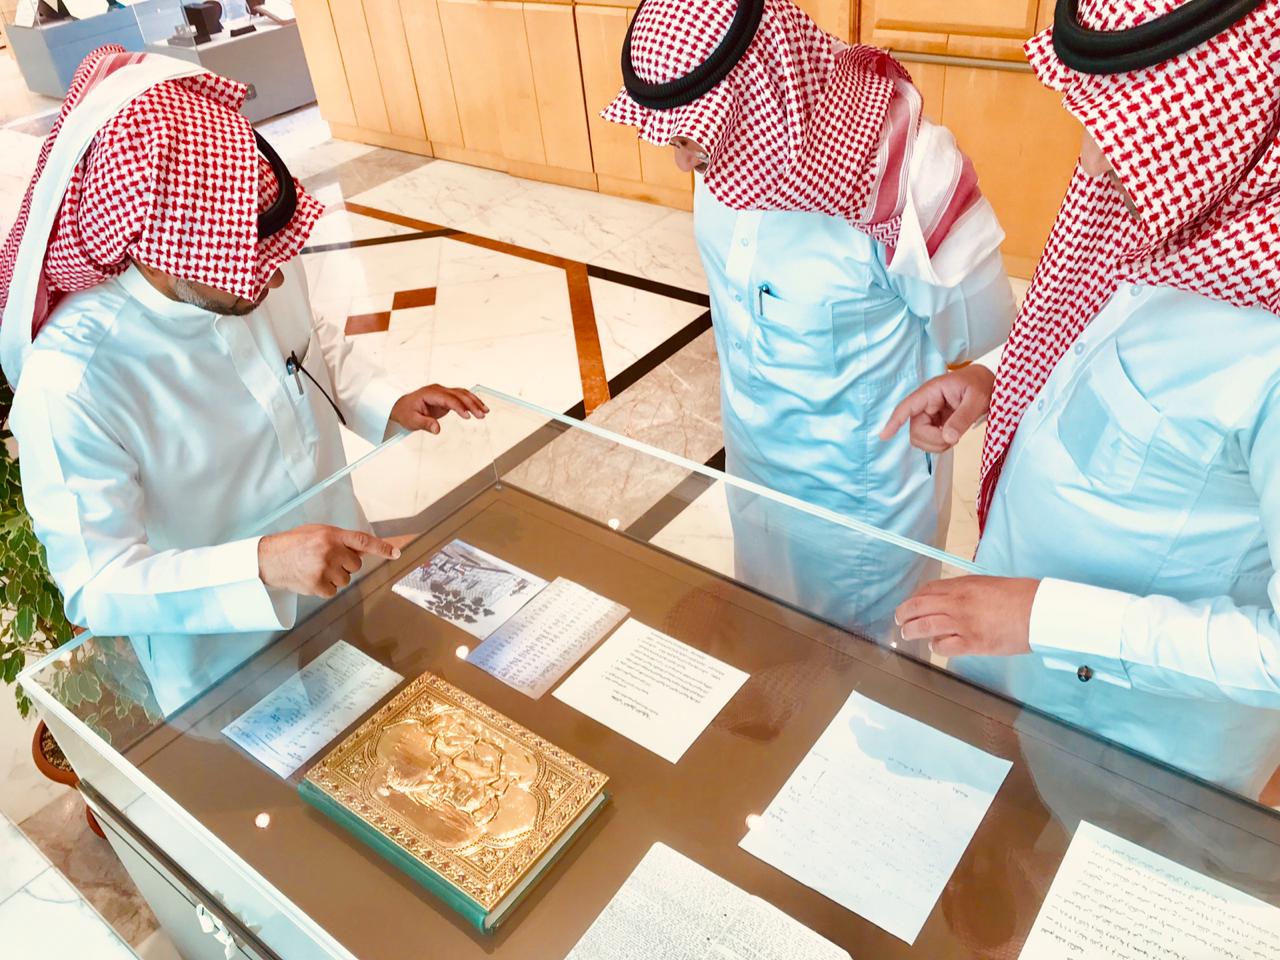 في يوم التراث العالمي مكتبة الملك عبدالعزيز العامة تبرز جهودها في حفظ التراث العربي والإسلامي